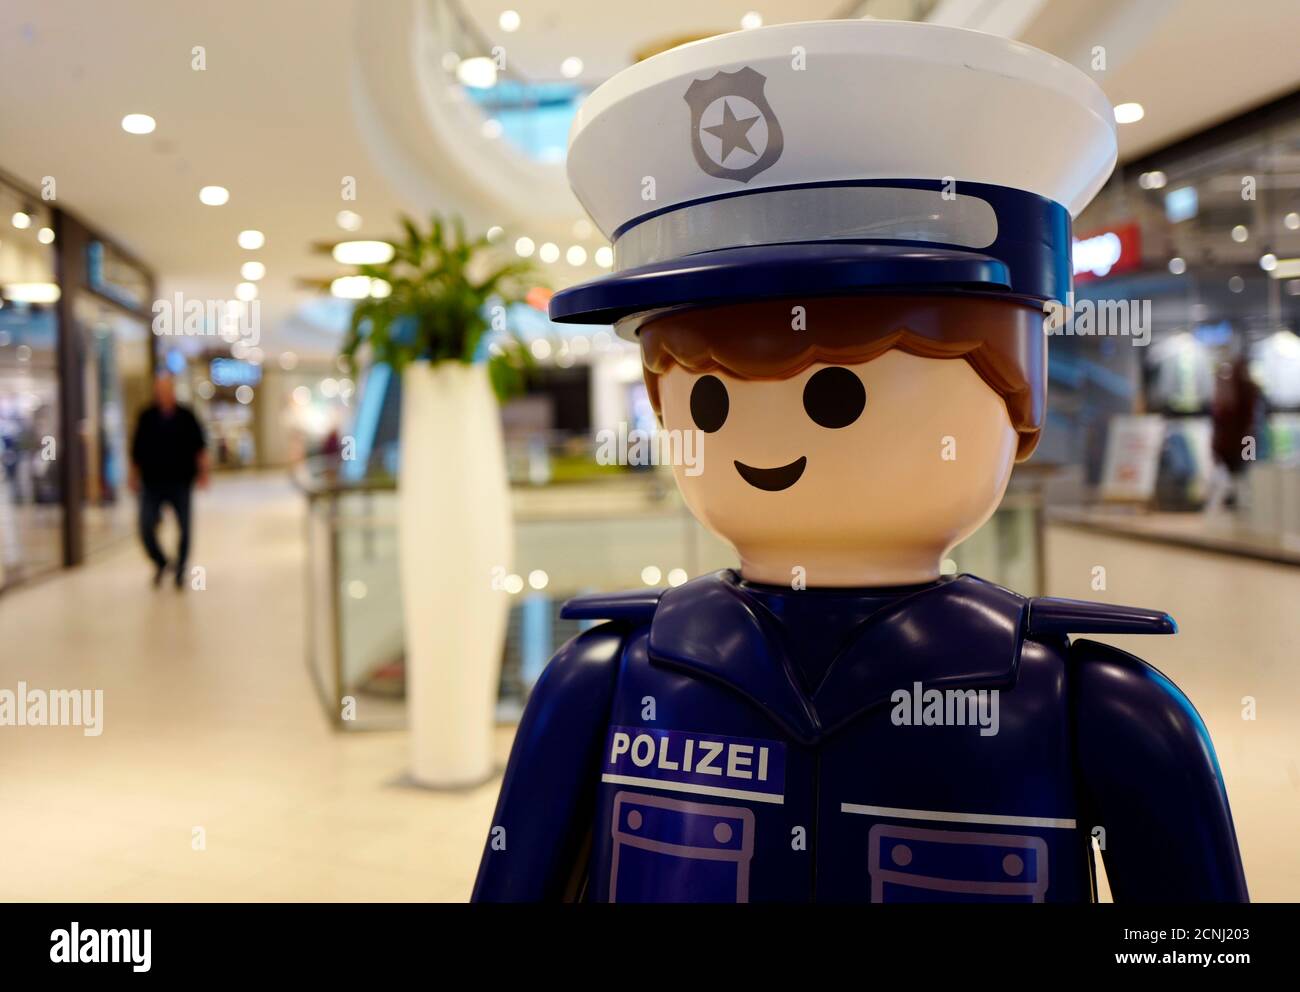 Eine überdimensionale Playmobil Plastiktüte Polizeimann ist in einem  Einkaufszentrum in der Stadt Hanau bei Frankfurt am Main, 15. März 2016 zu  sehen. REUTERS/Kai Pfaffenbach Stockfotografie - Alamy